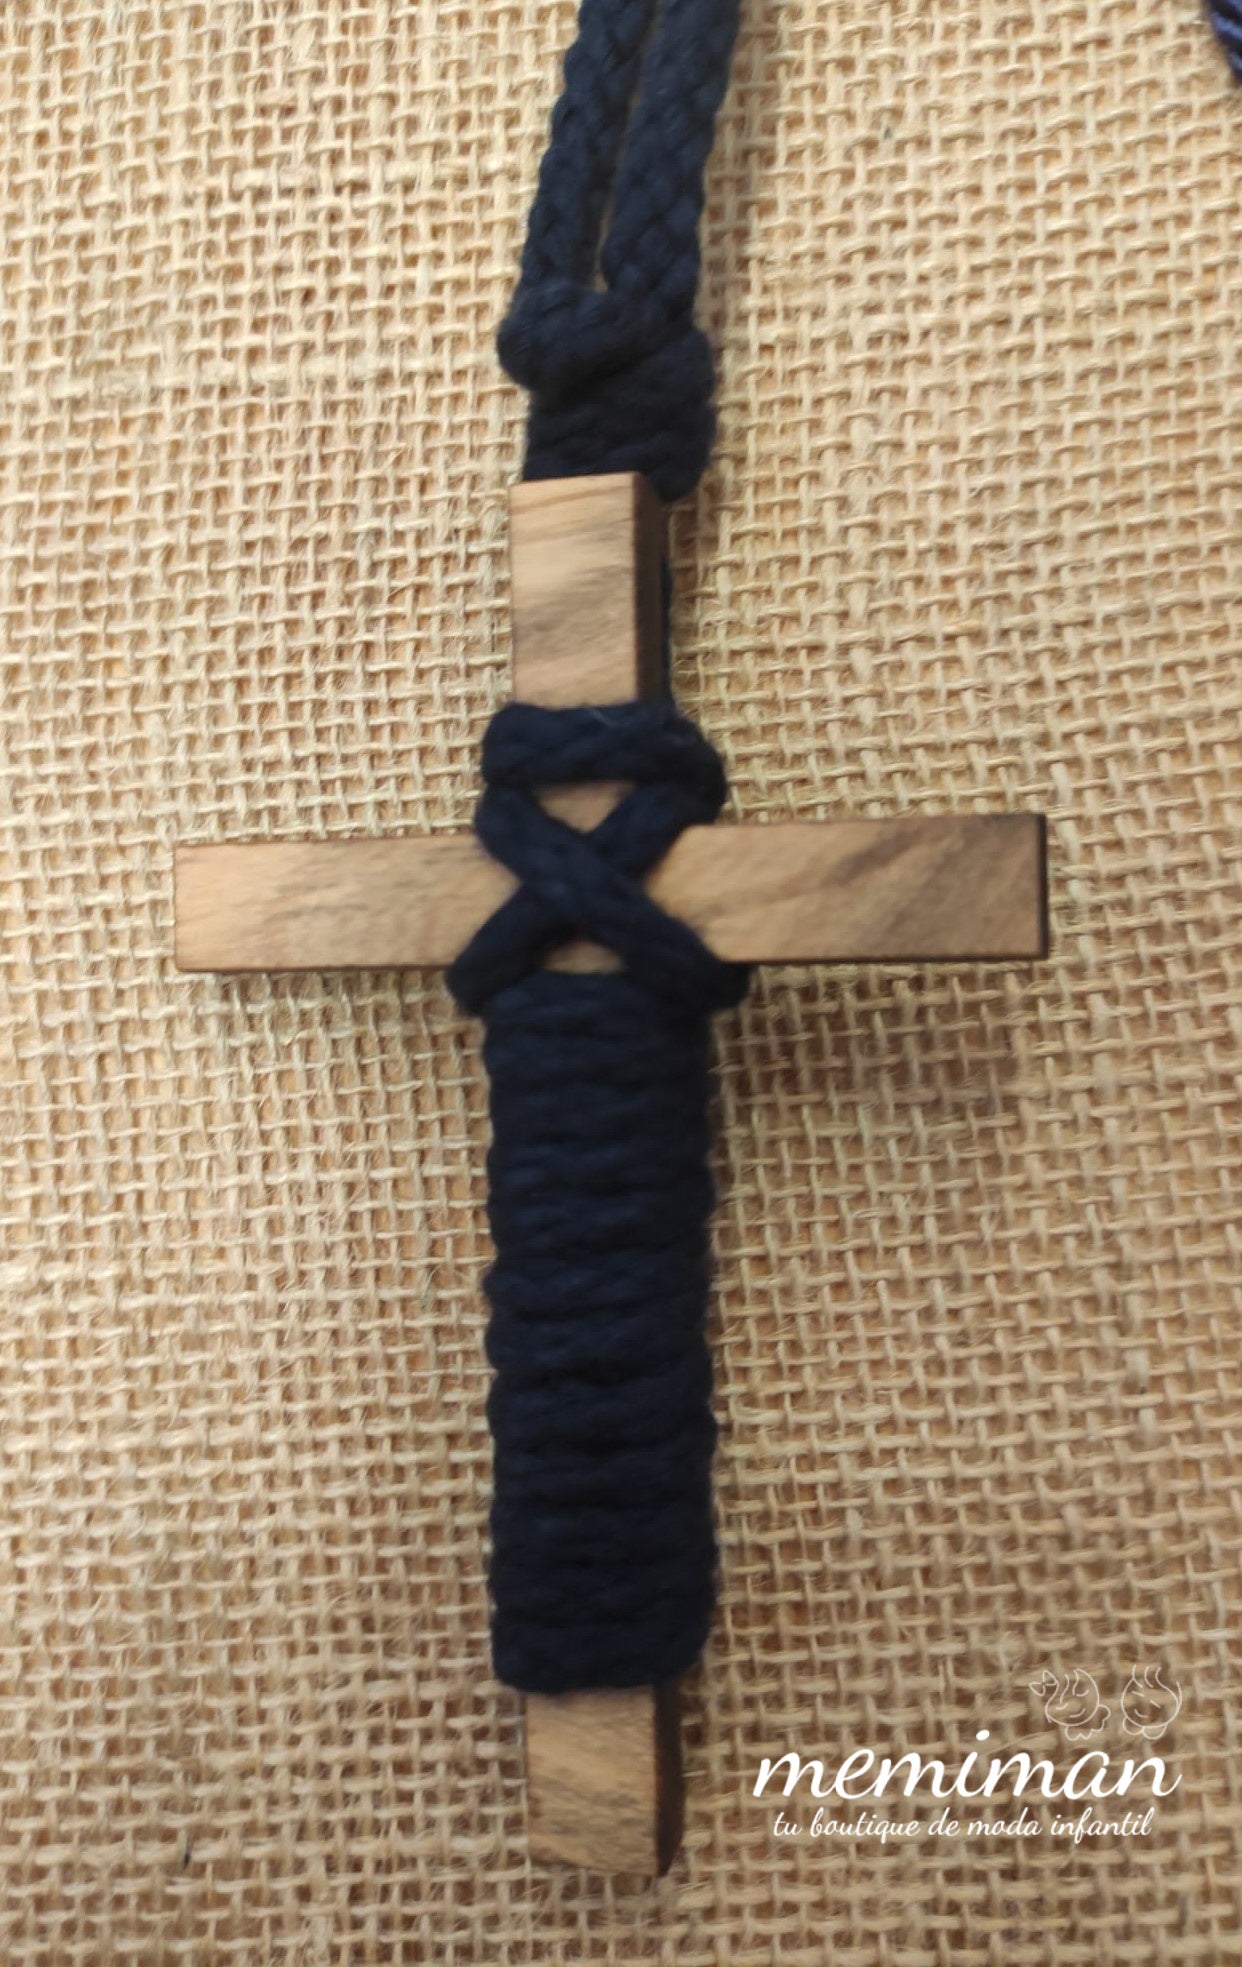 Cruz de madera con cordón (desde 19€)